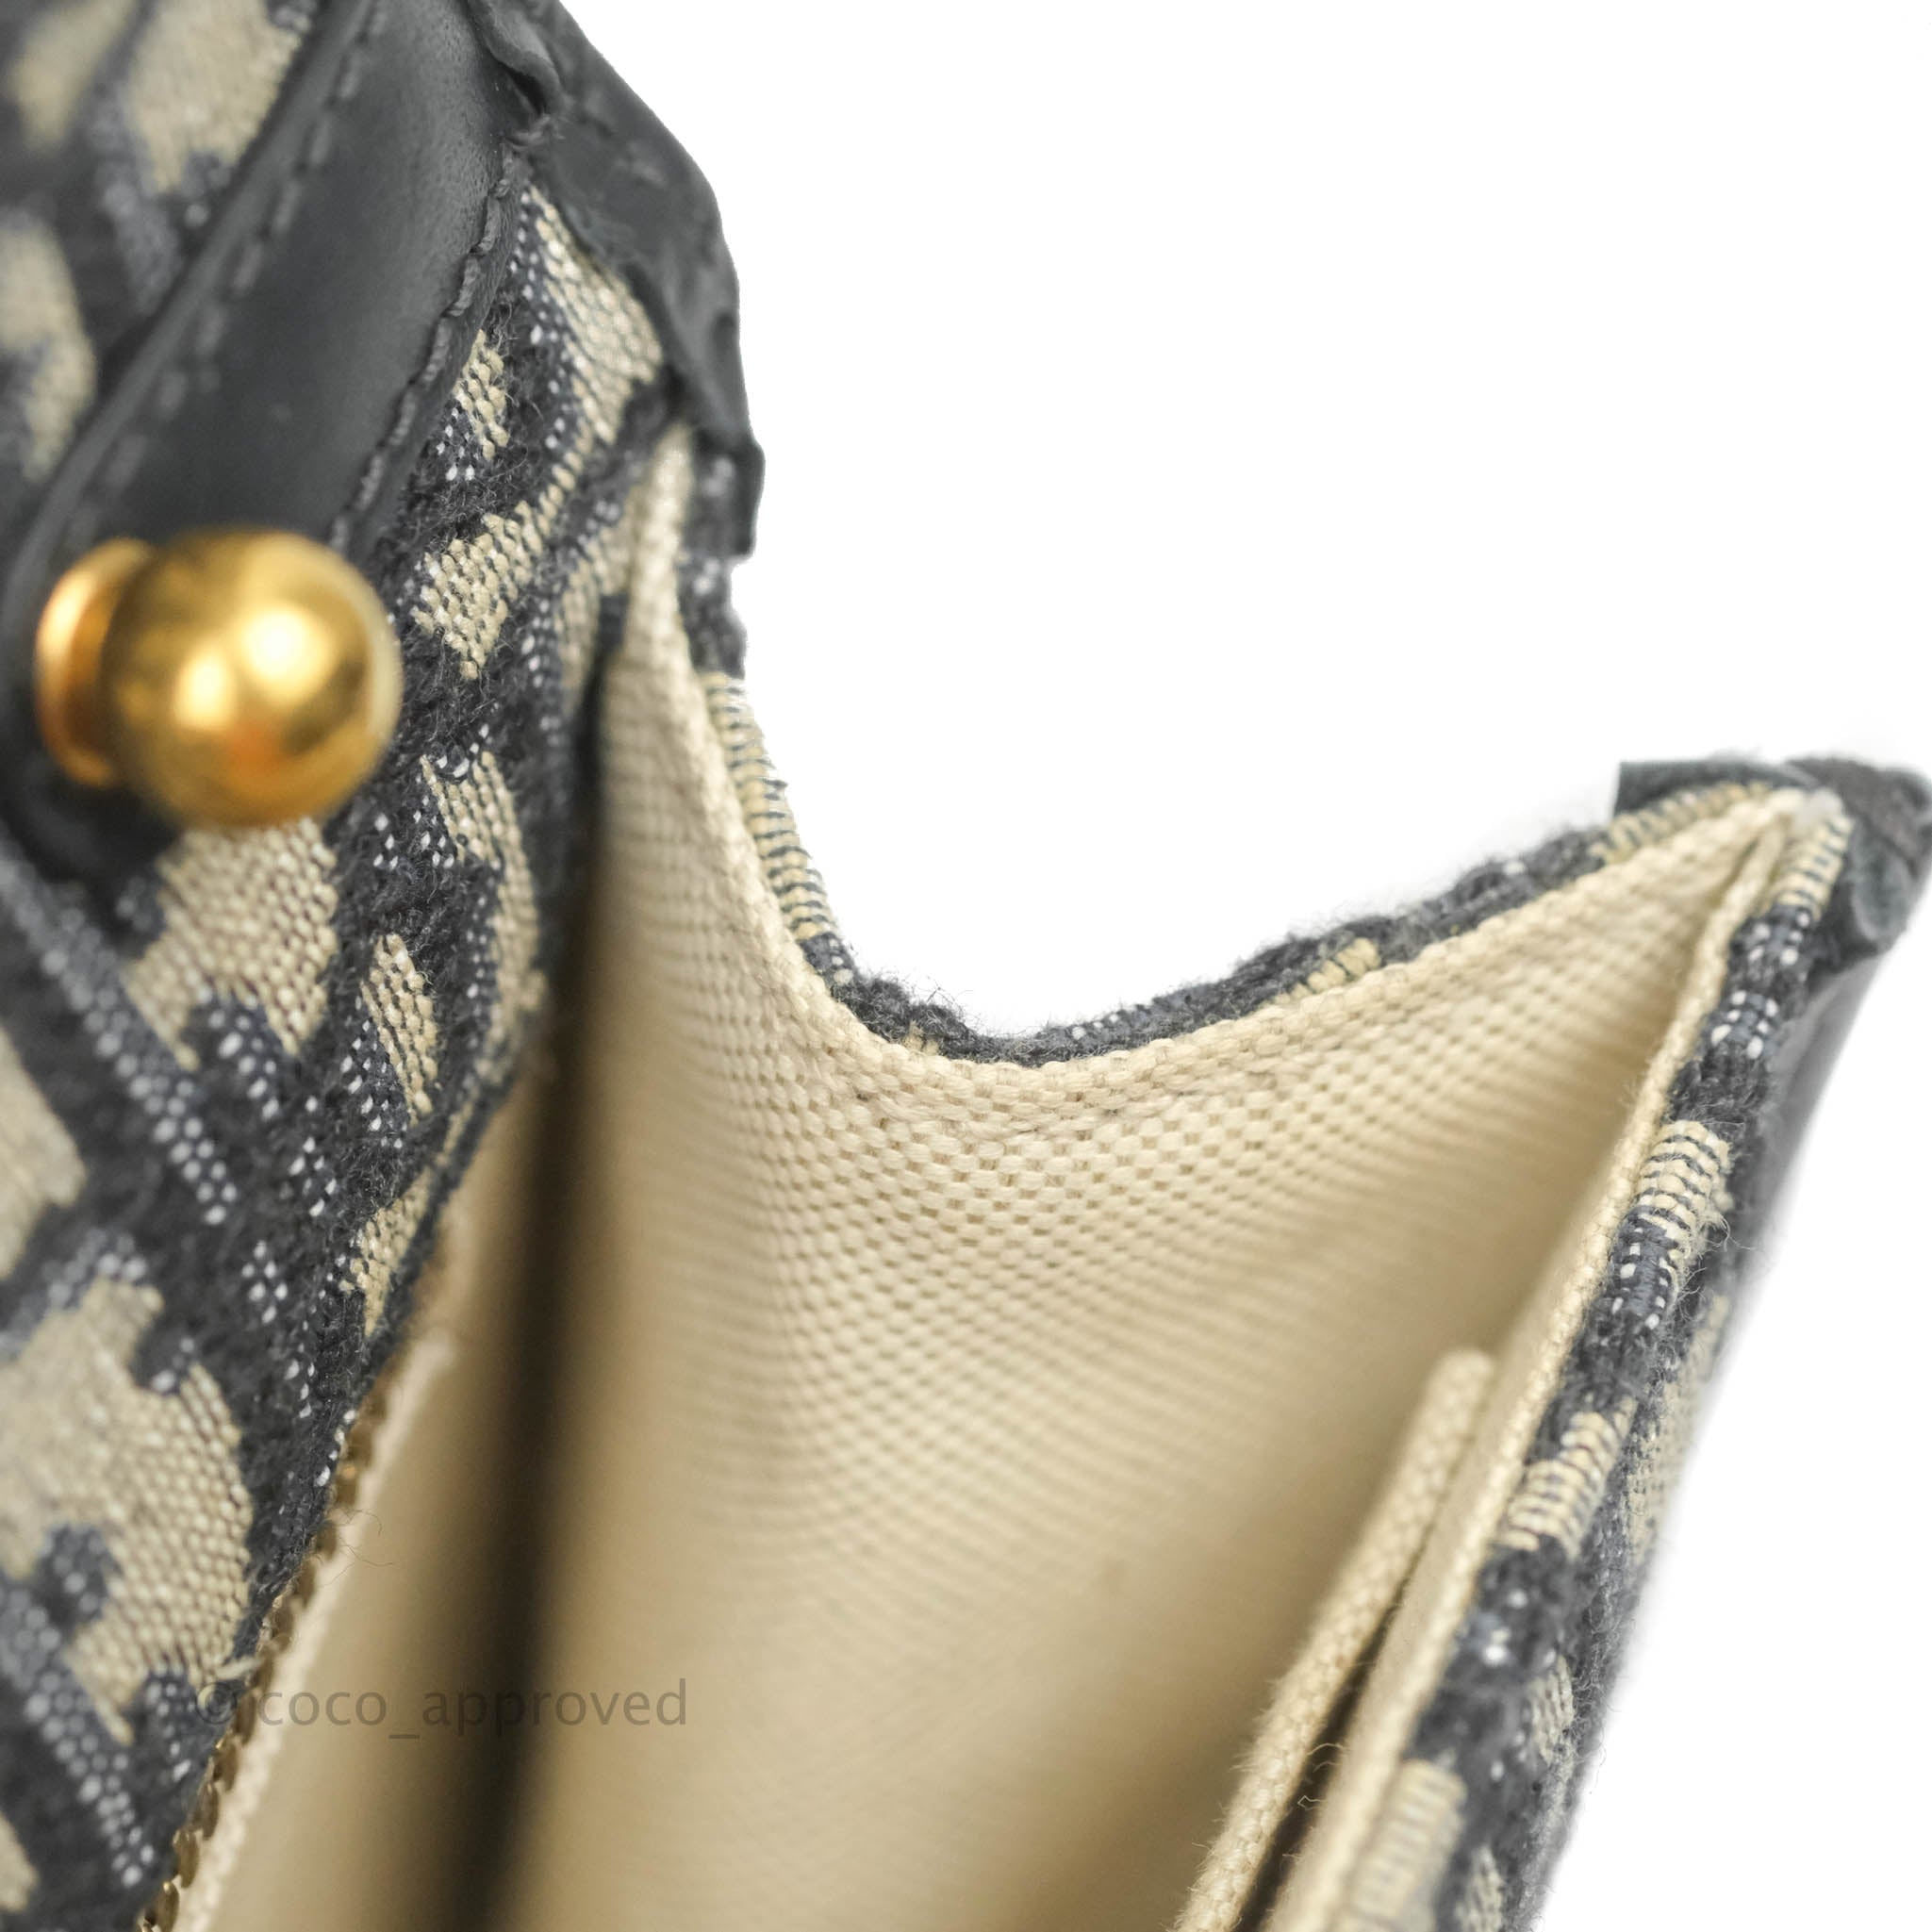 Dior Duffle Bag - Oblique, Part of 2019 Collection (Ret. 3300$)